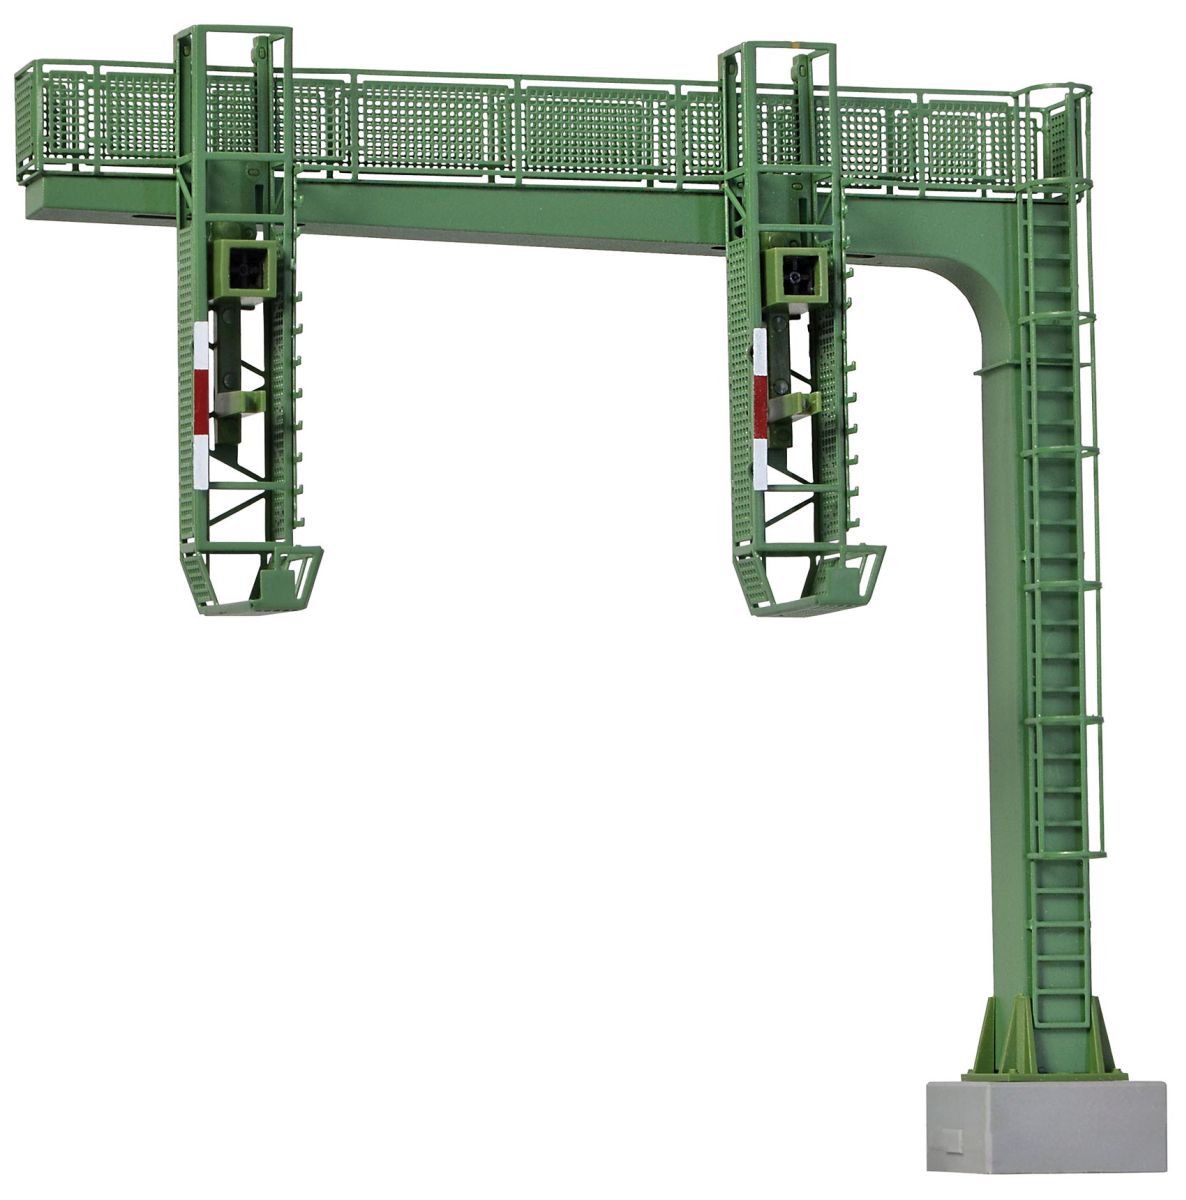 Viessmann 4755 - Signalbrücke mit Multiplex-Technologie ohne Signalköpfe